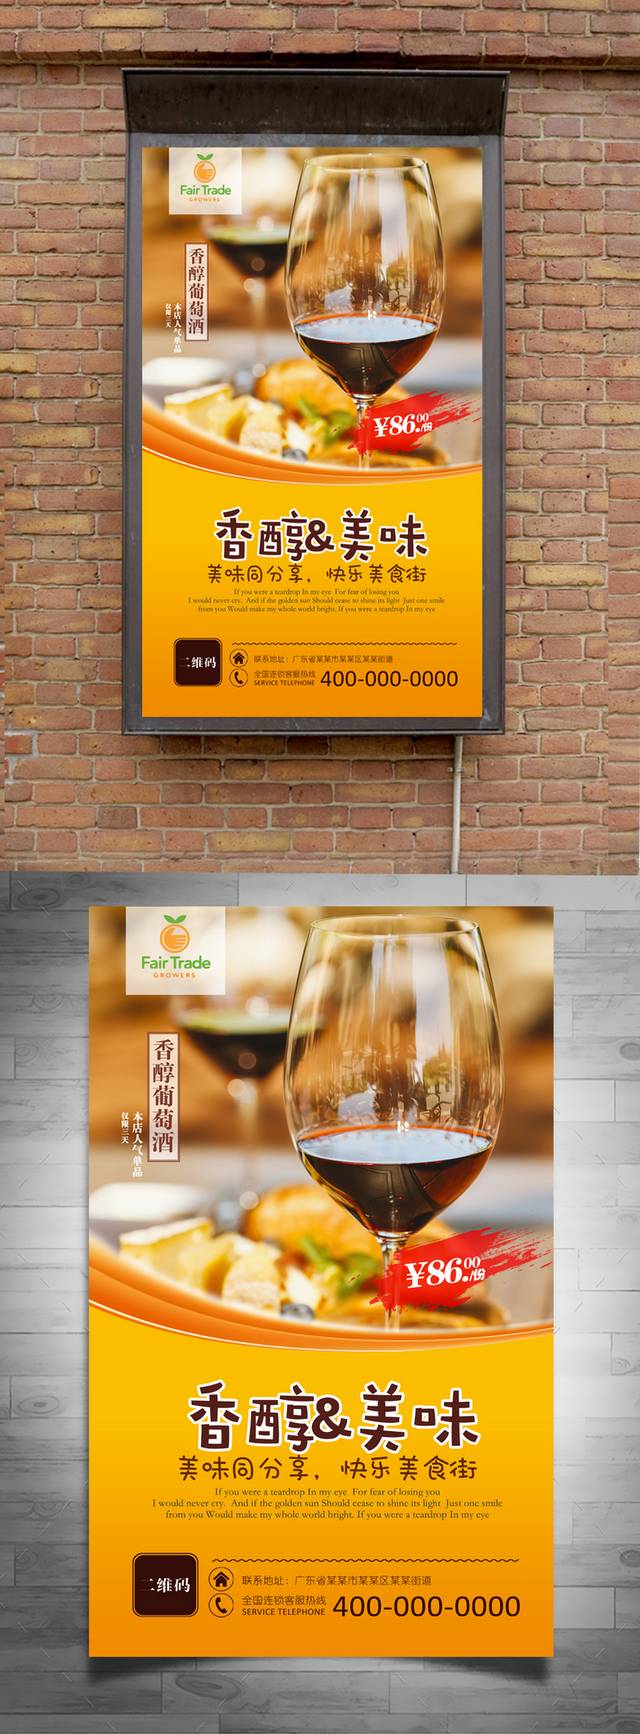 高档美味葡萄酒促销宣传海报设计